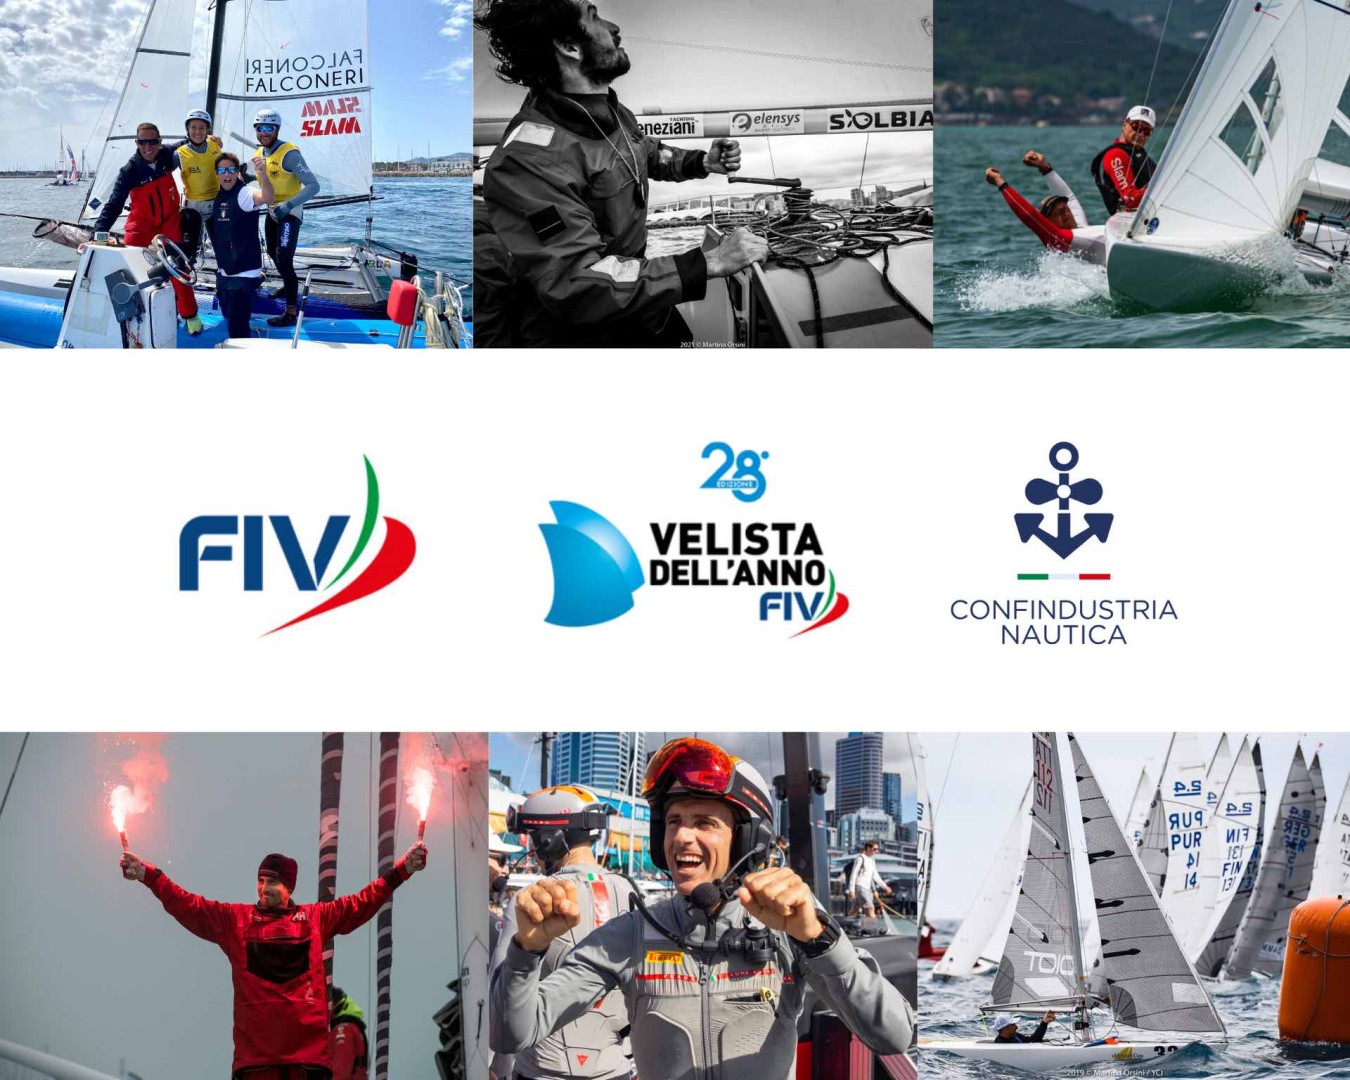 Confindustria Nautica: Grande attesa per la 28ma edizione degli Oscar della Vela Italiana il 6 giugno a Roma